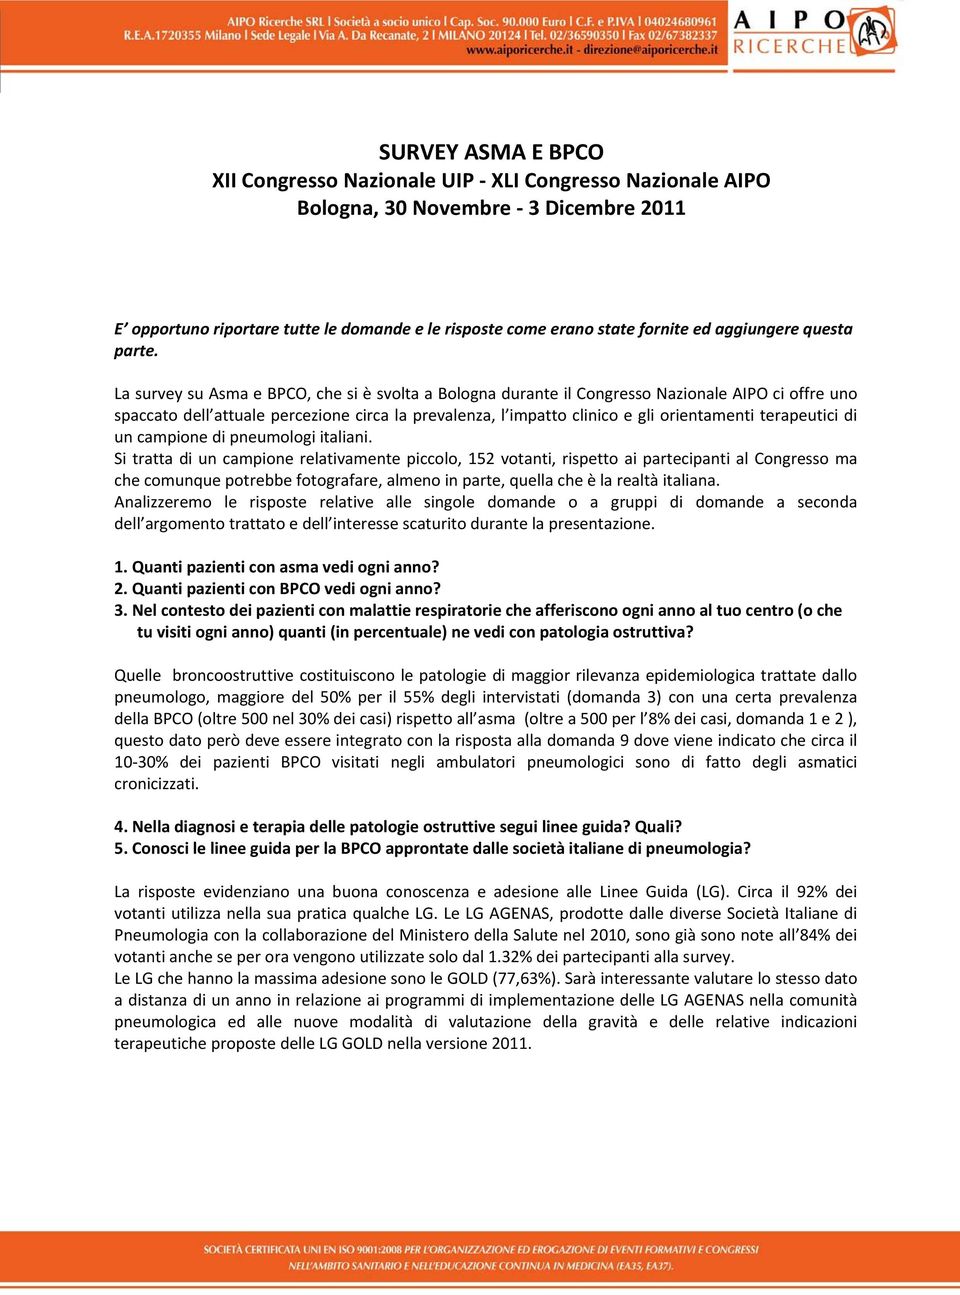 La survey su Asma e BPCO, che si è svolta a Bologna durante il Congresso Nazionale AIPO ci offre uno spaccato dell attuale percezione circa la prevalenza, l impatto clinico e gli orientamenti